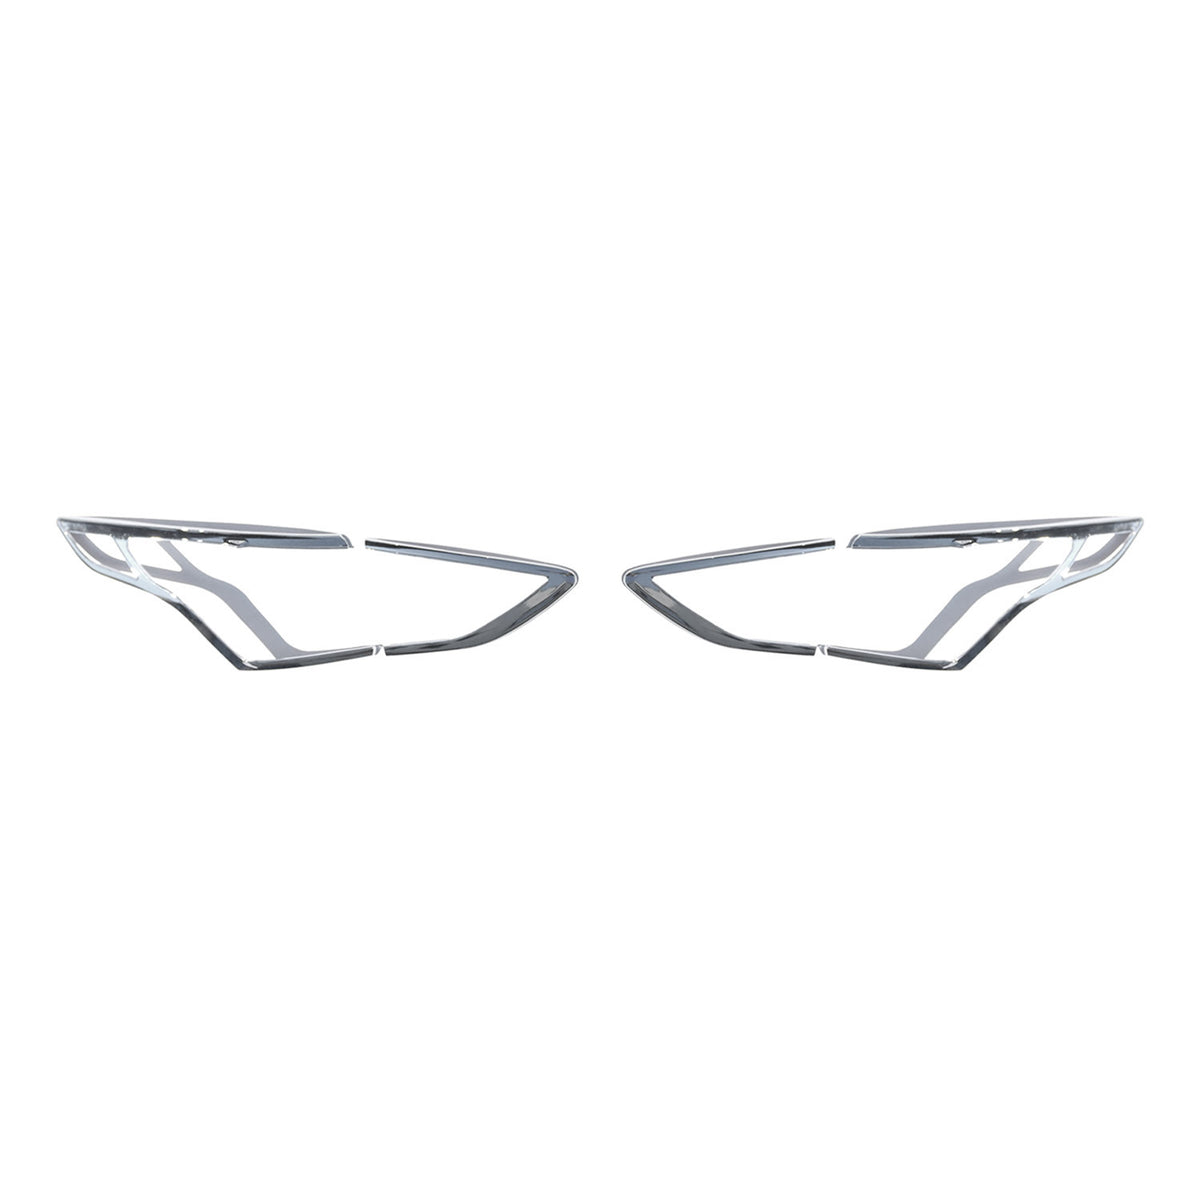 Rücklicht Leisten Heckleuchte für Ford Kuga 2012-2019 Chrom ABS Silber 4tlg